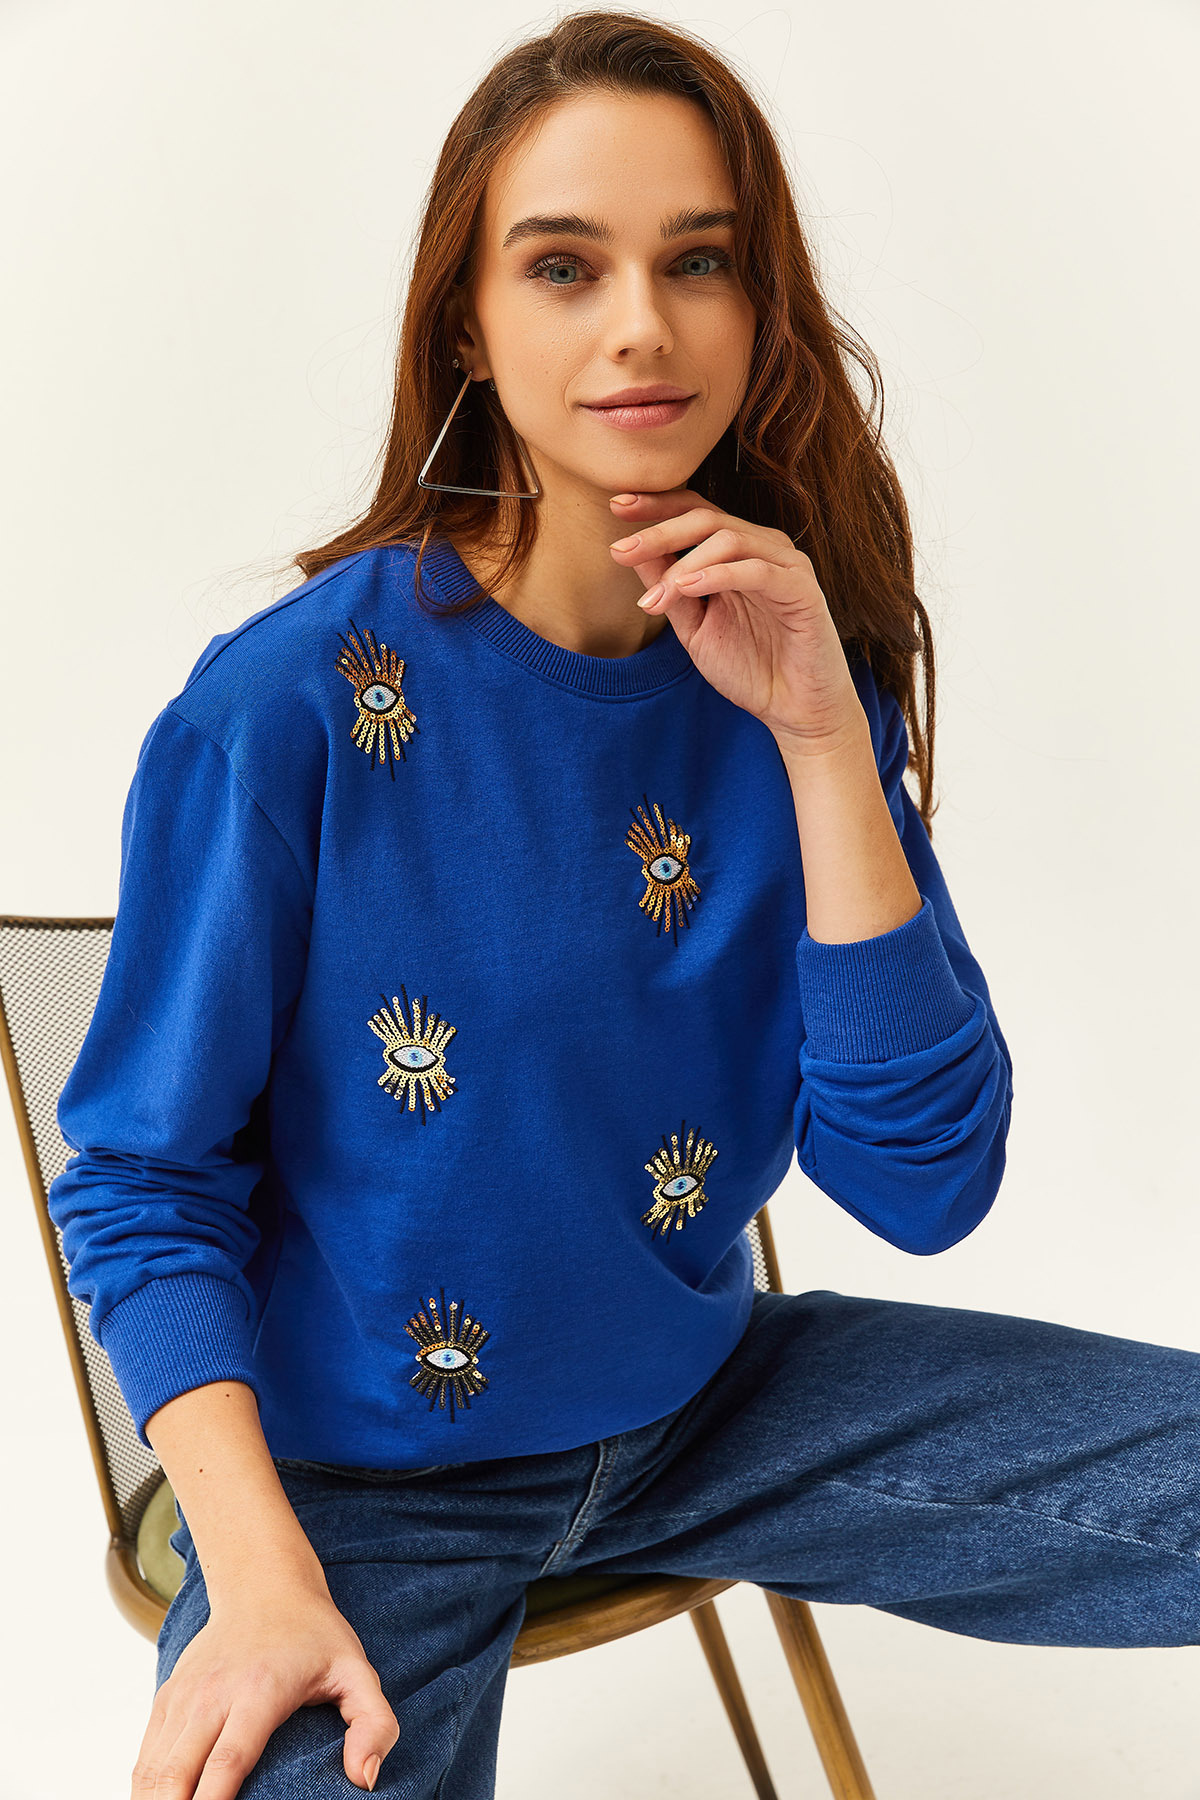 Olalook Women's Saxe Blue Eye Embroidered Seasonal Sweatshirt